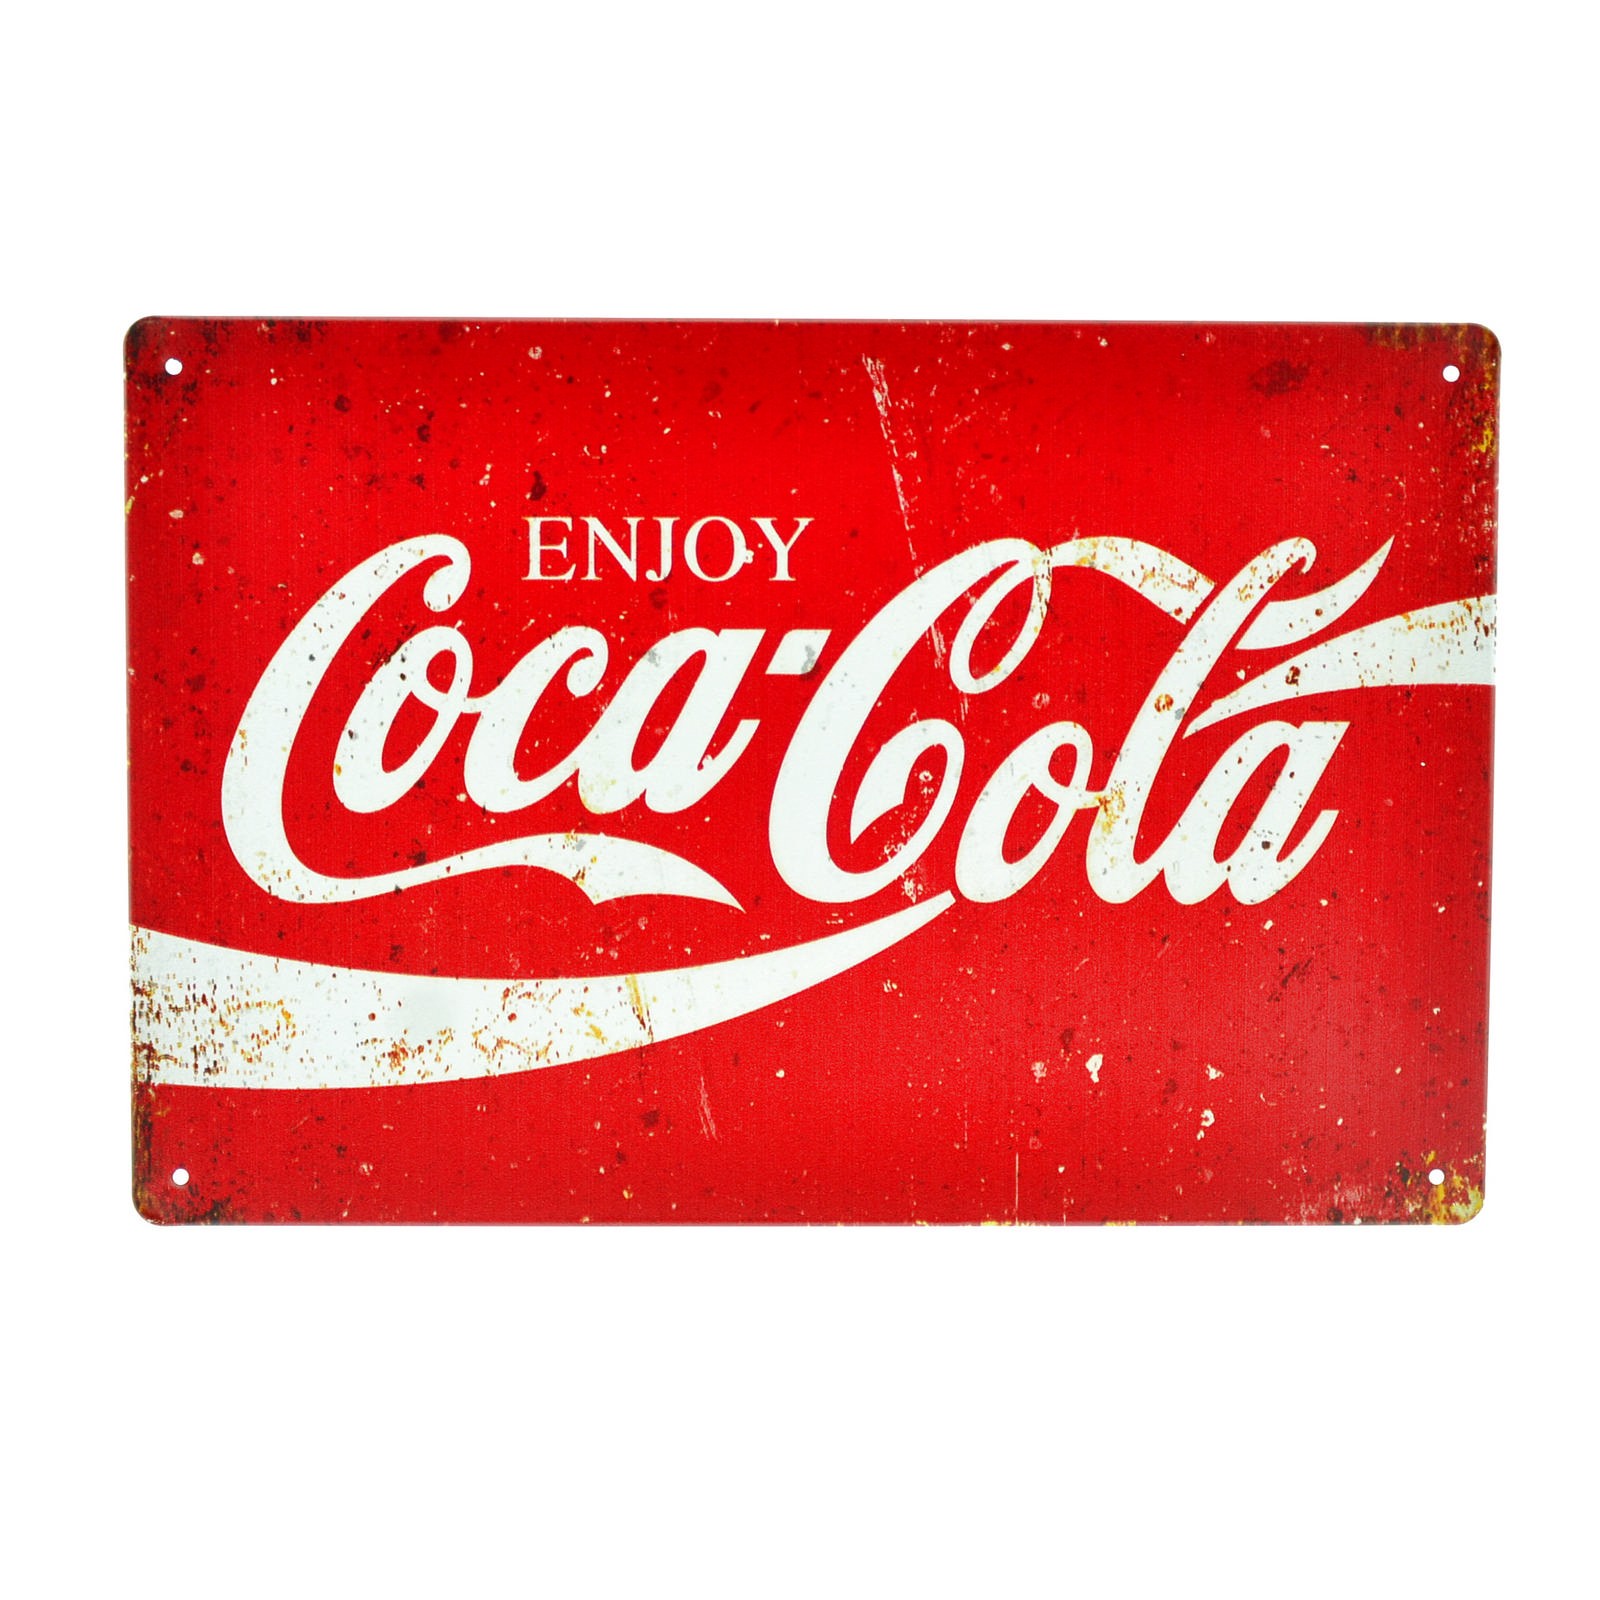 Cartel Metálico de Coca Cola logo rojo